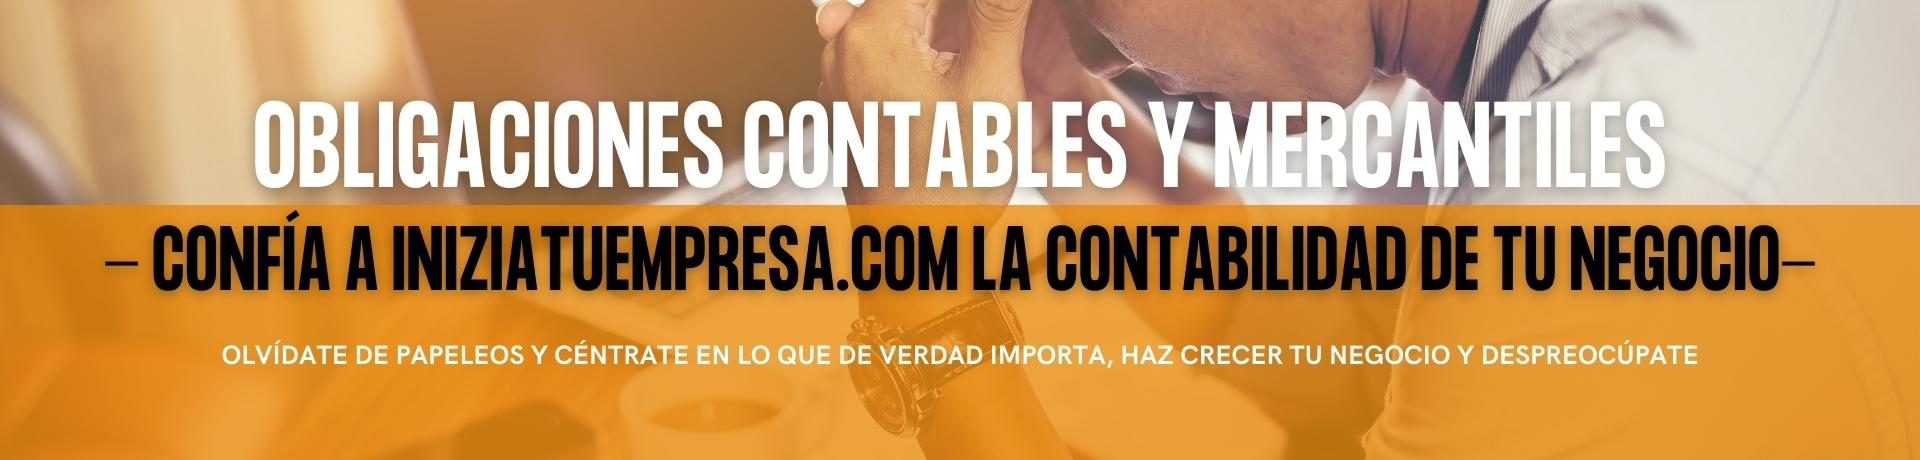 Obligaciones Contables y Mercantiles INIZIATUEMPRESA.COM